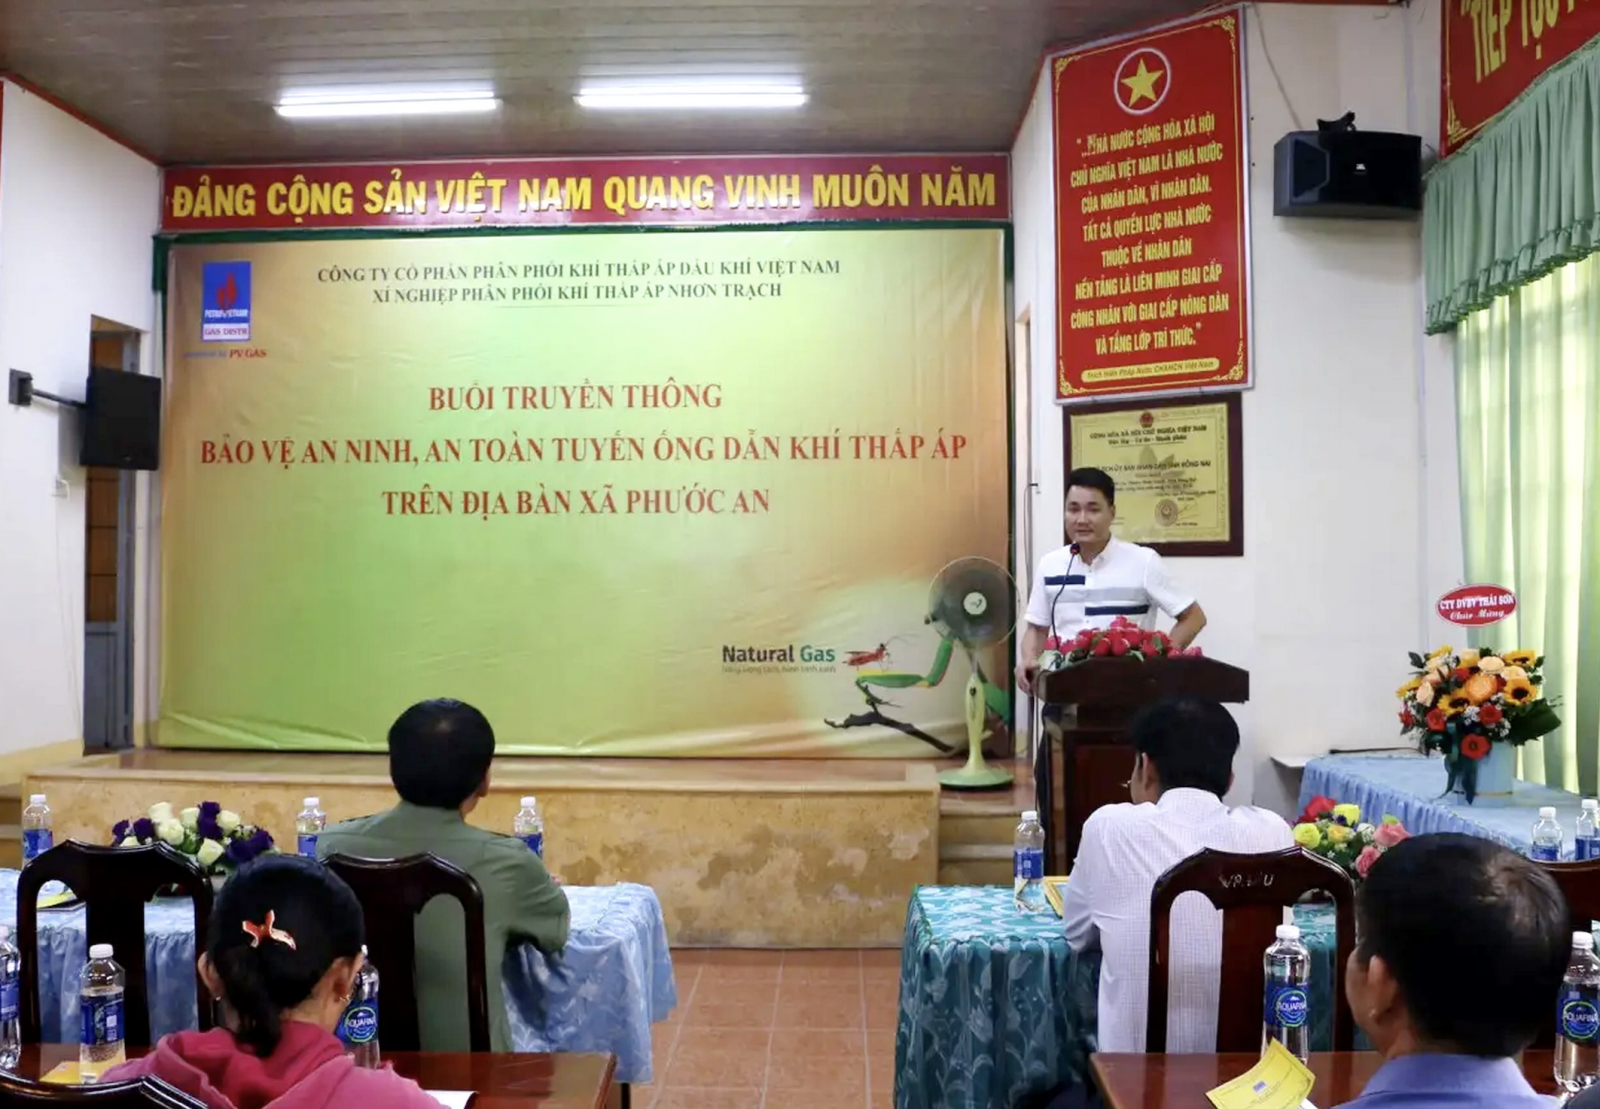 Xí nghiệp Phân phối Khí thấp áp Nhơn Trạch tổ chức “Truyền thông bảo vệ an ninh, an toàn hành lang tuyến ống dẫn khí thấp áp trên địa bàn xã Phước An năm 2023”